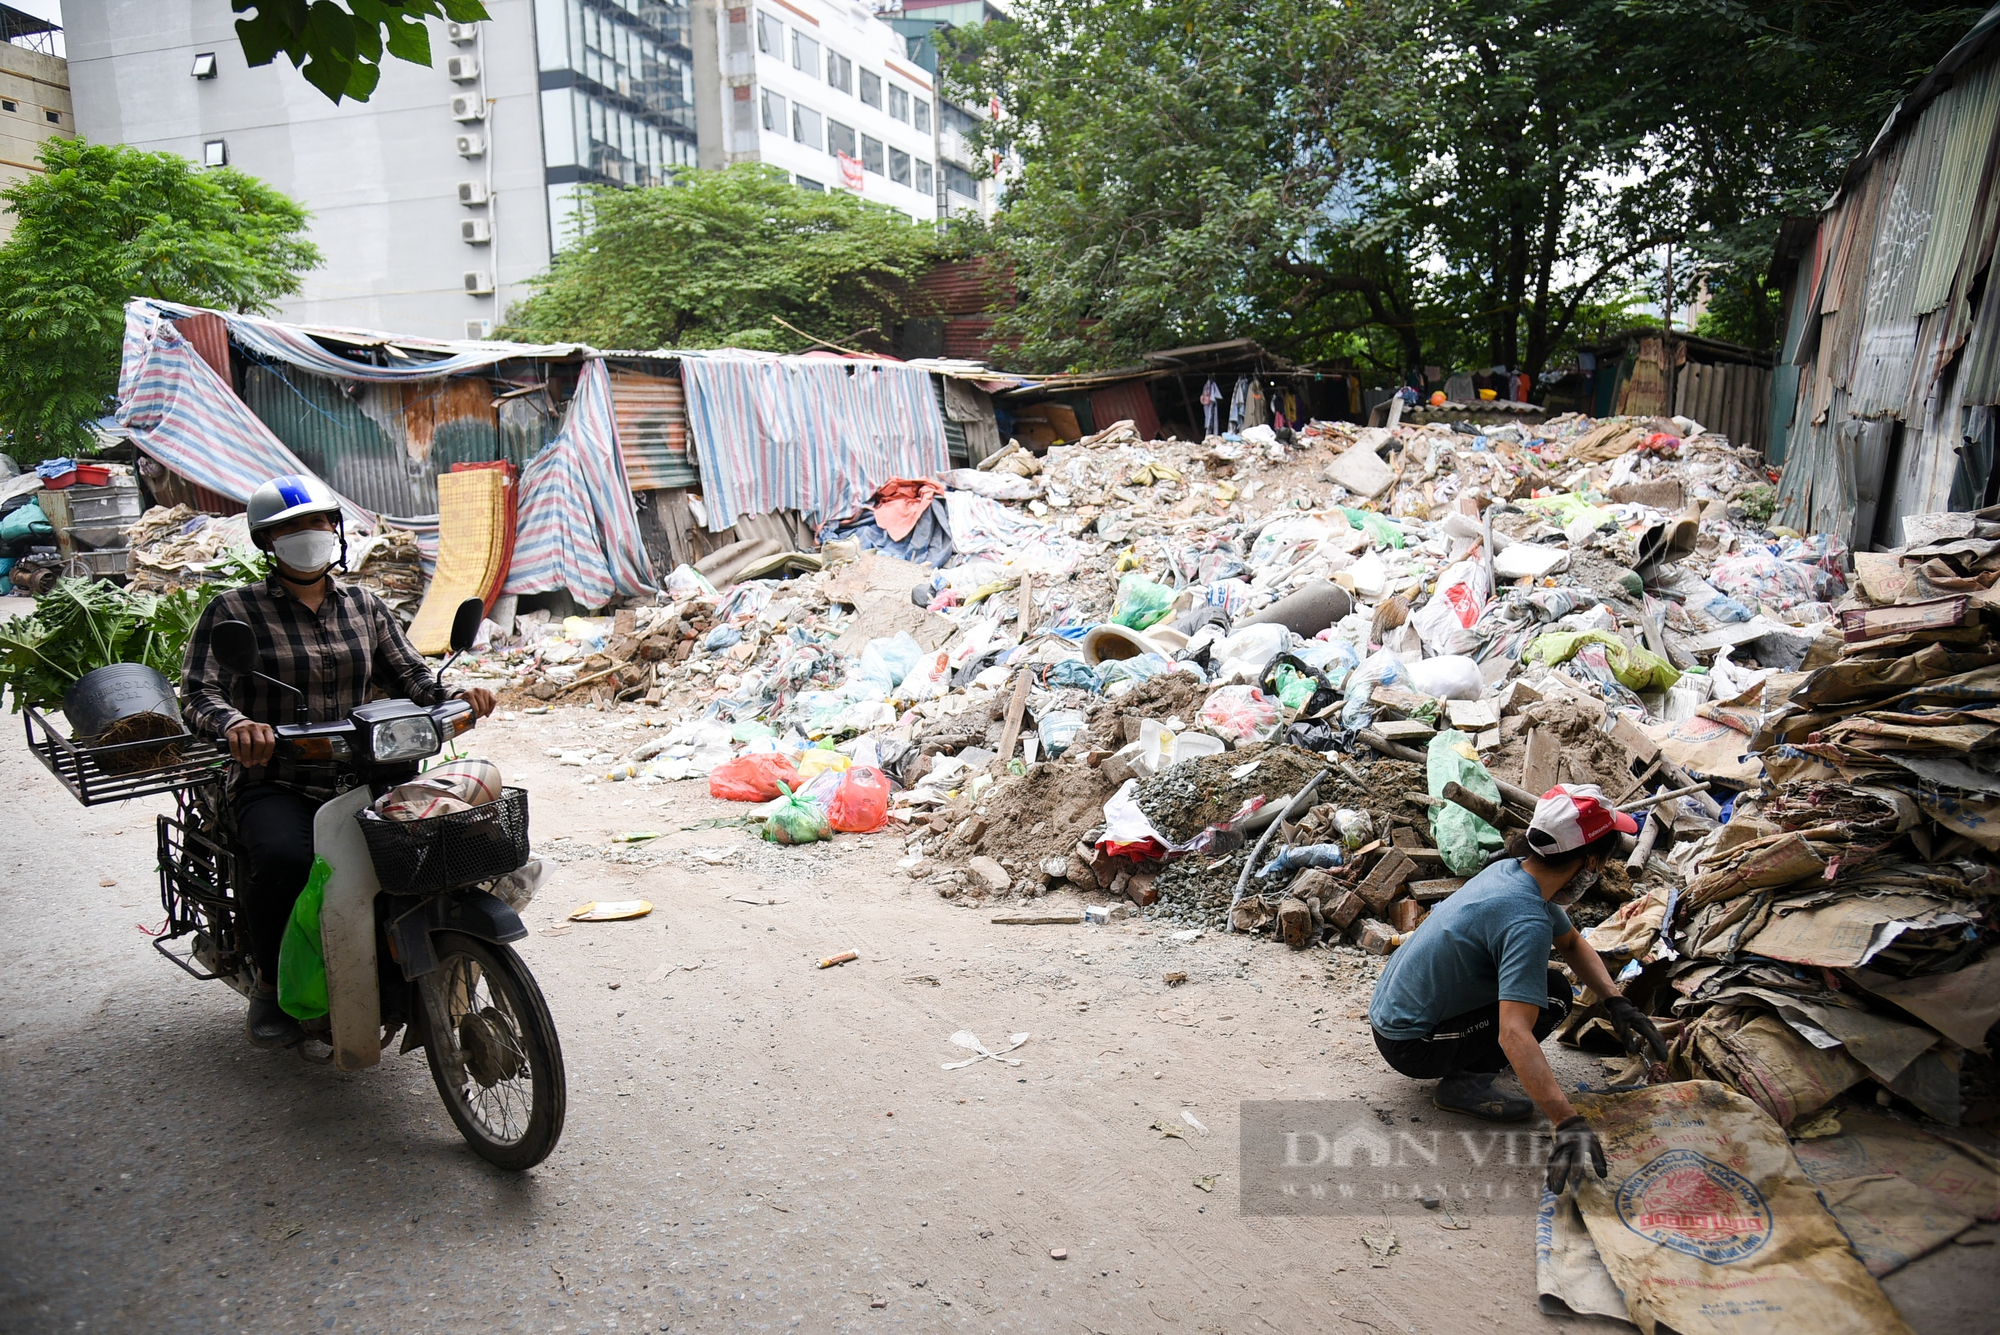 Ngang nhiên đổ rác thải xây dựng giữa ban ngày trong khu dân cư - Ảnh 1.